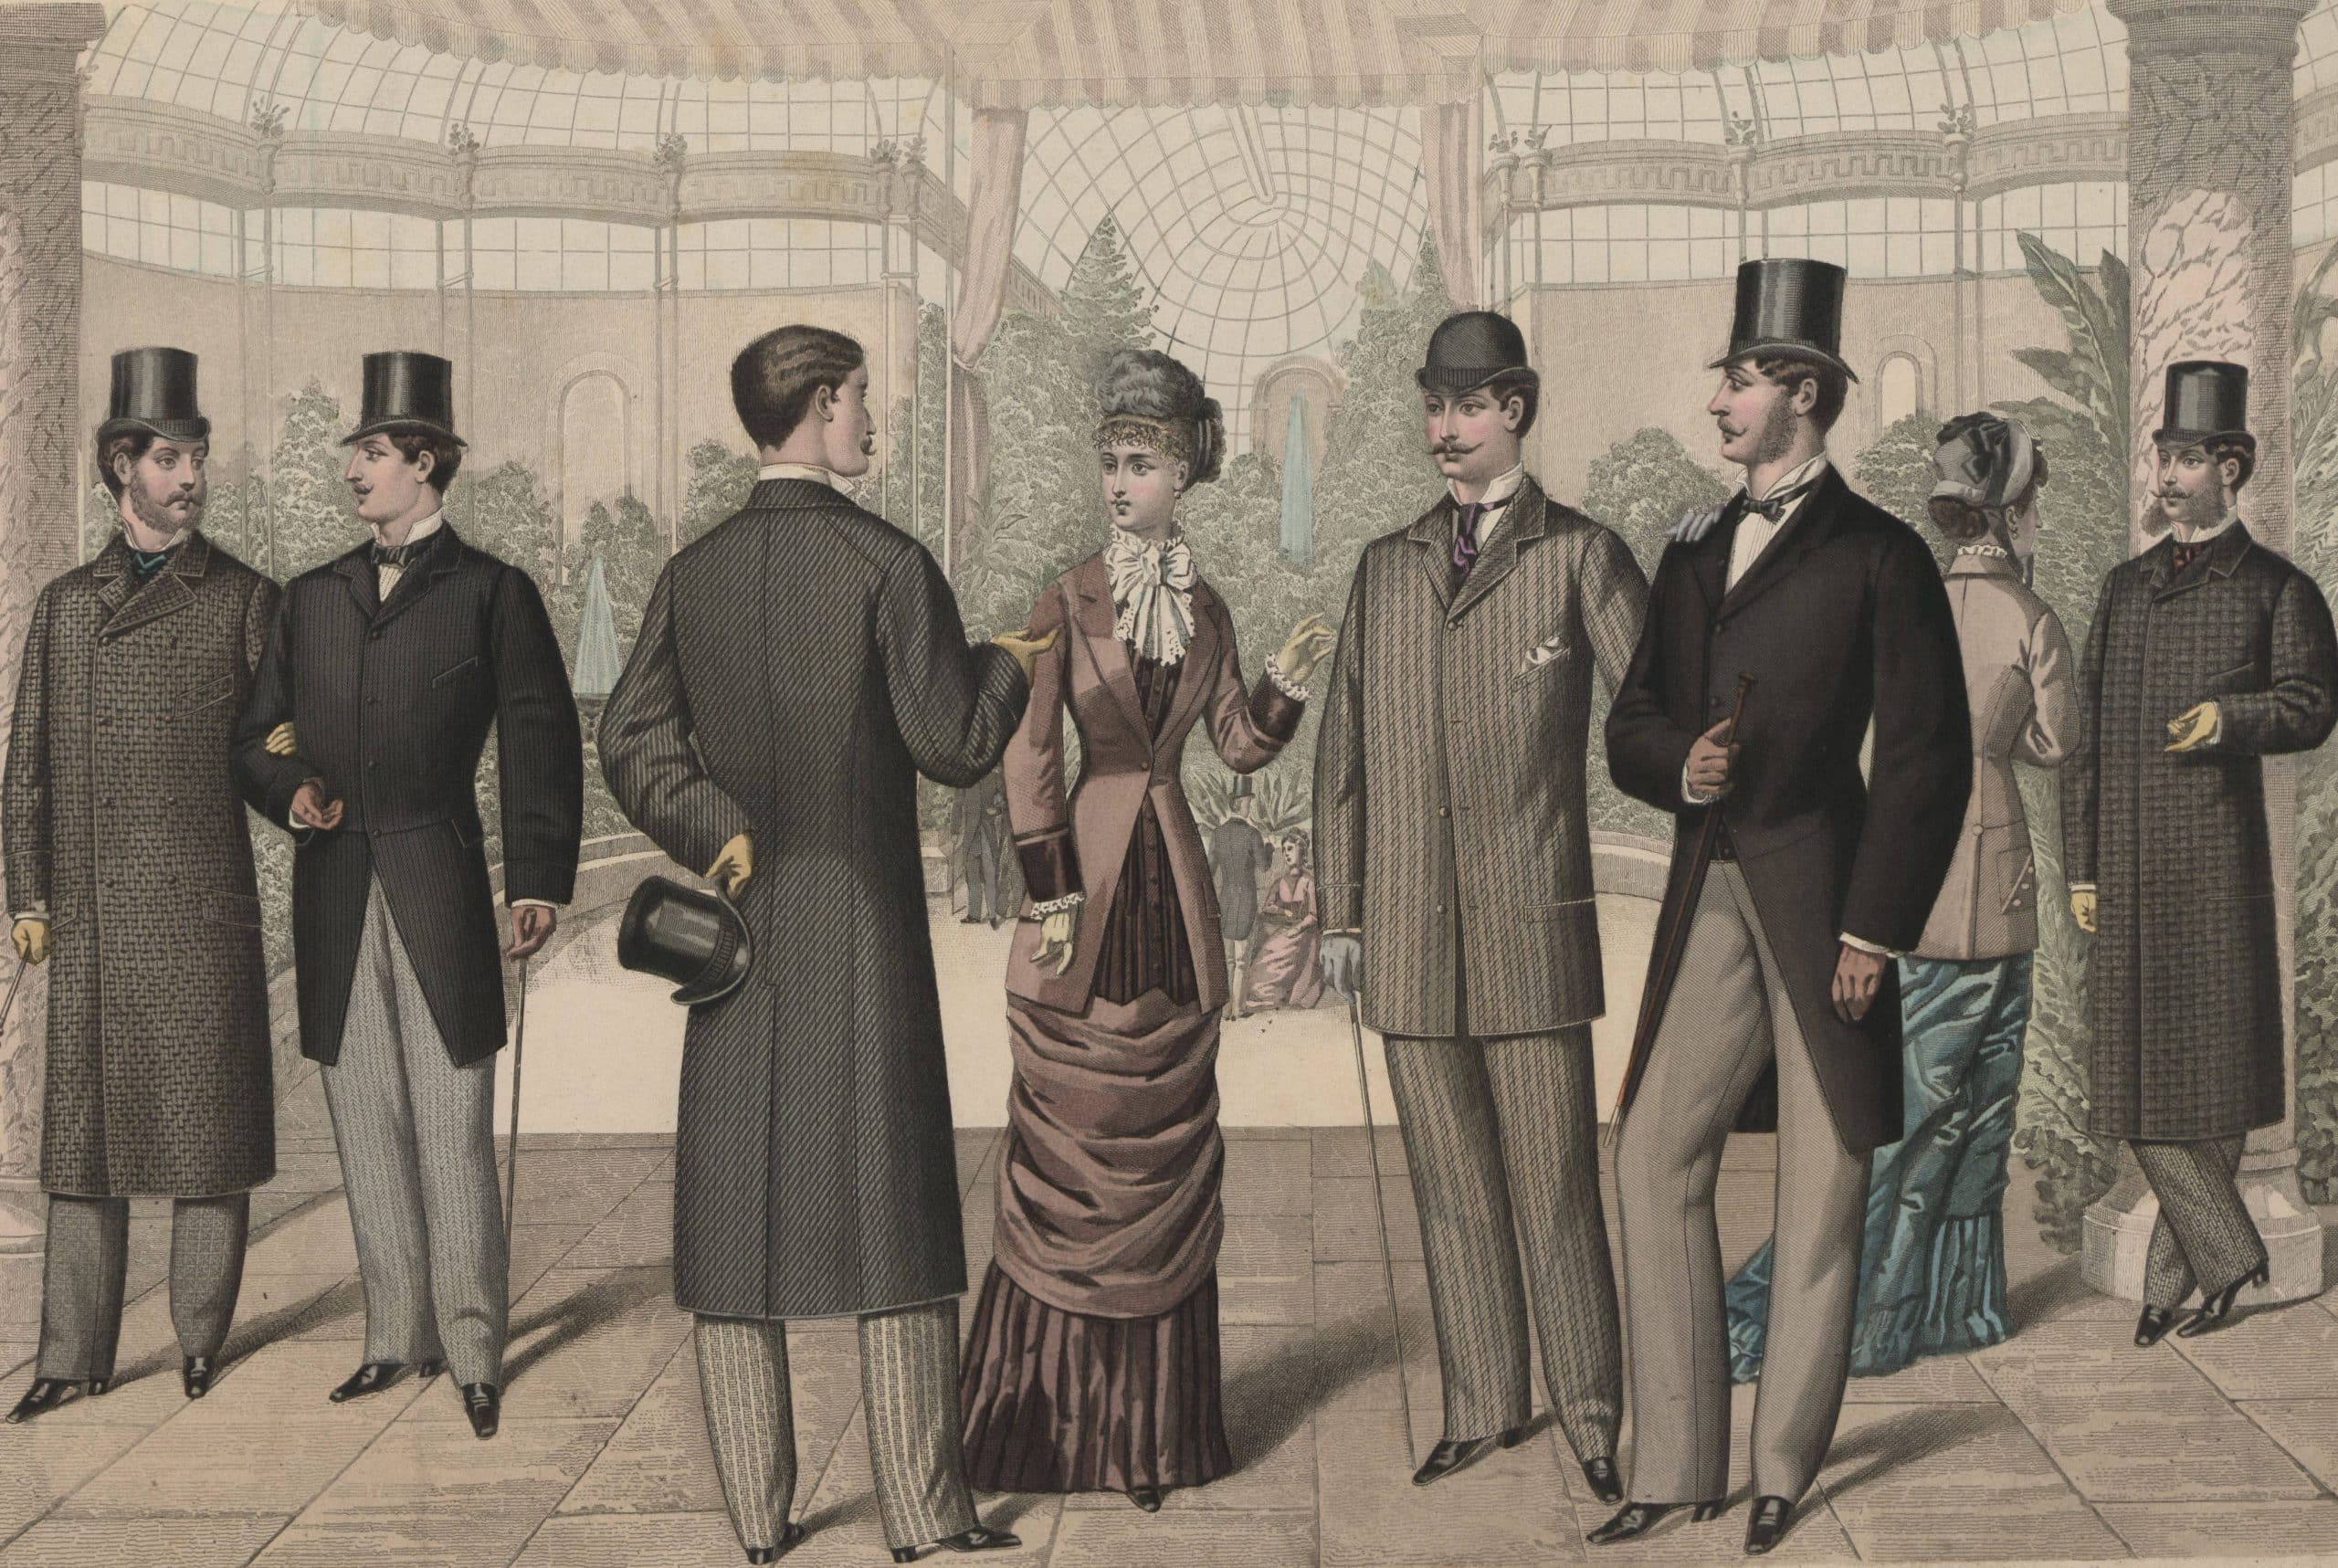 Formell klädsel på 1850-talet - klassiskt herrmode och etikett 